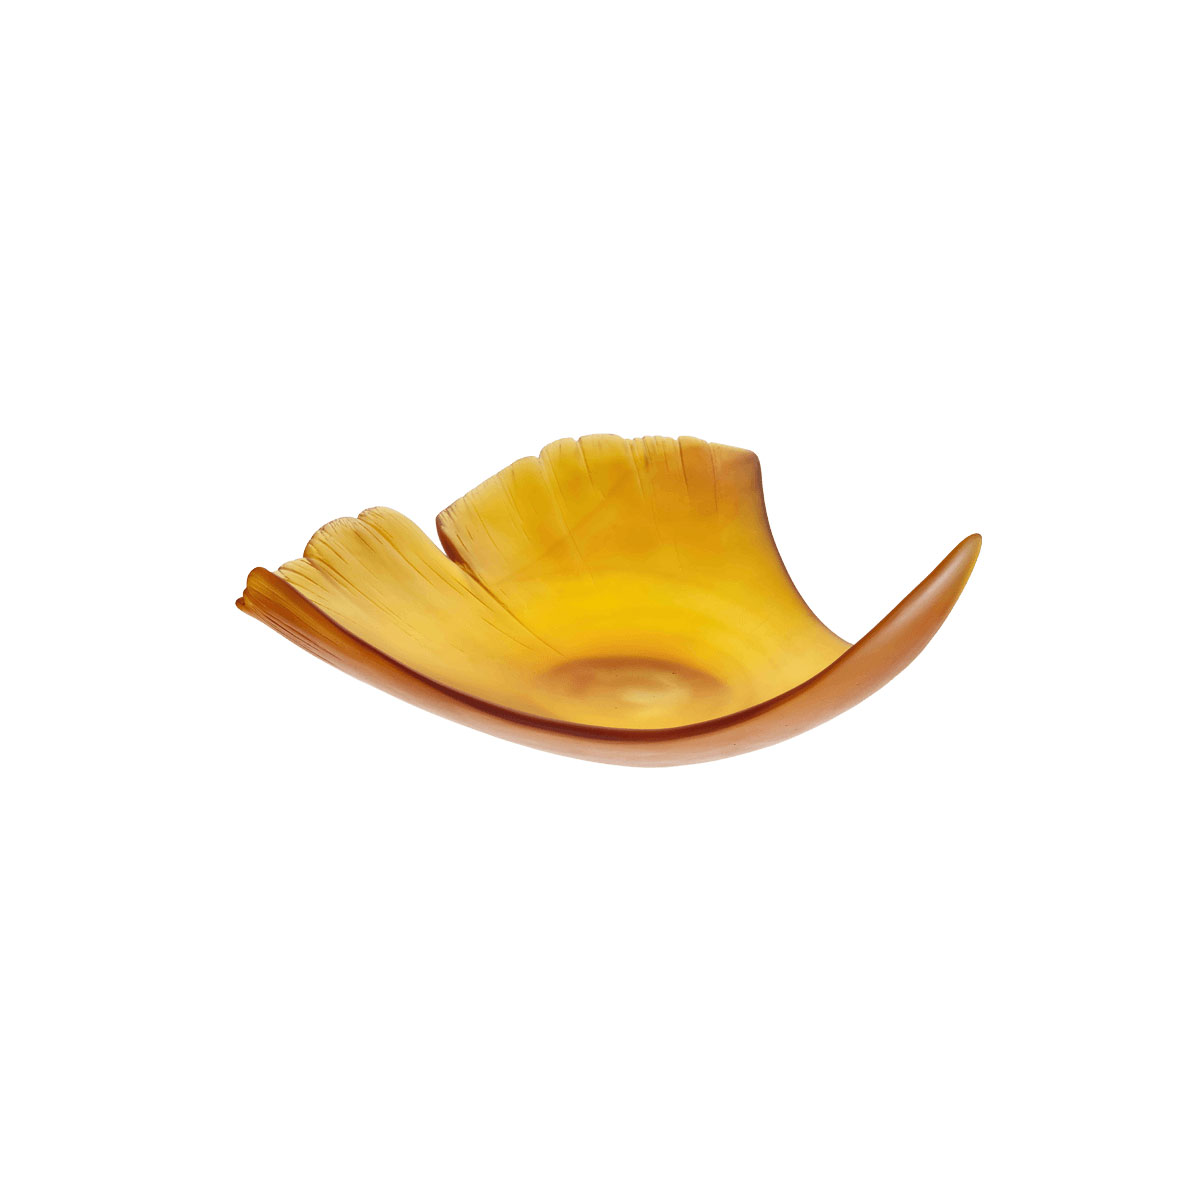 Daum 13" Ginkgo Leaf Bowl in Amber